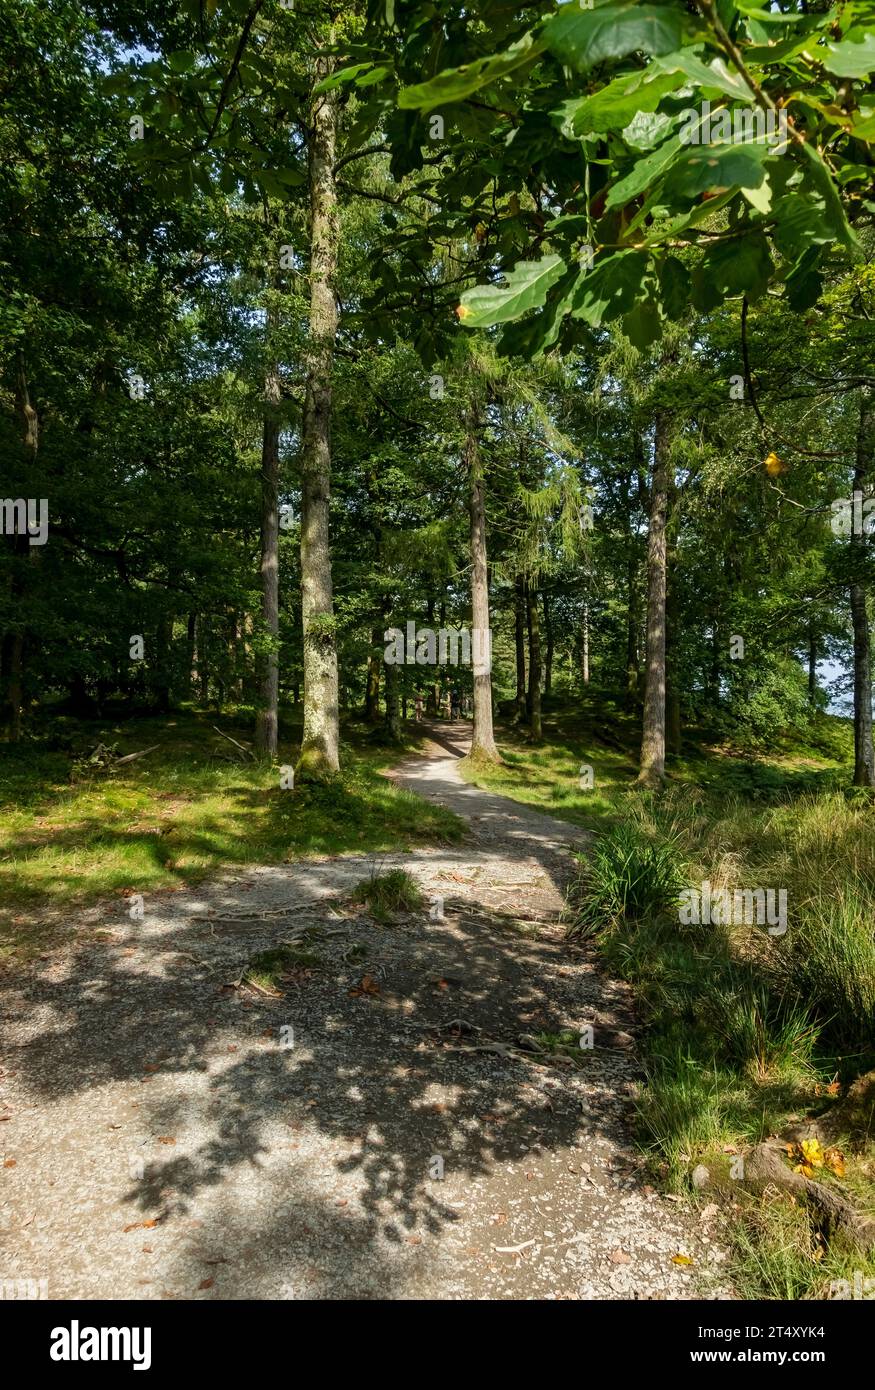 Sentier sentier promenade à travers les arbres de la forêt Manesty Woods près de Derwentwater en été Lake District National Park Cumbria Angleterre Royaume-Uni Grande-Bretagne Banque D'Images